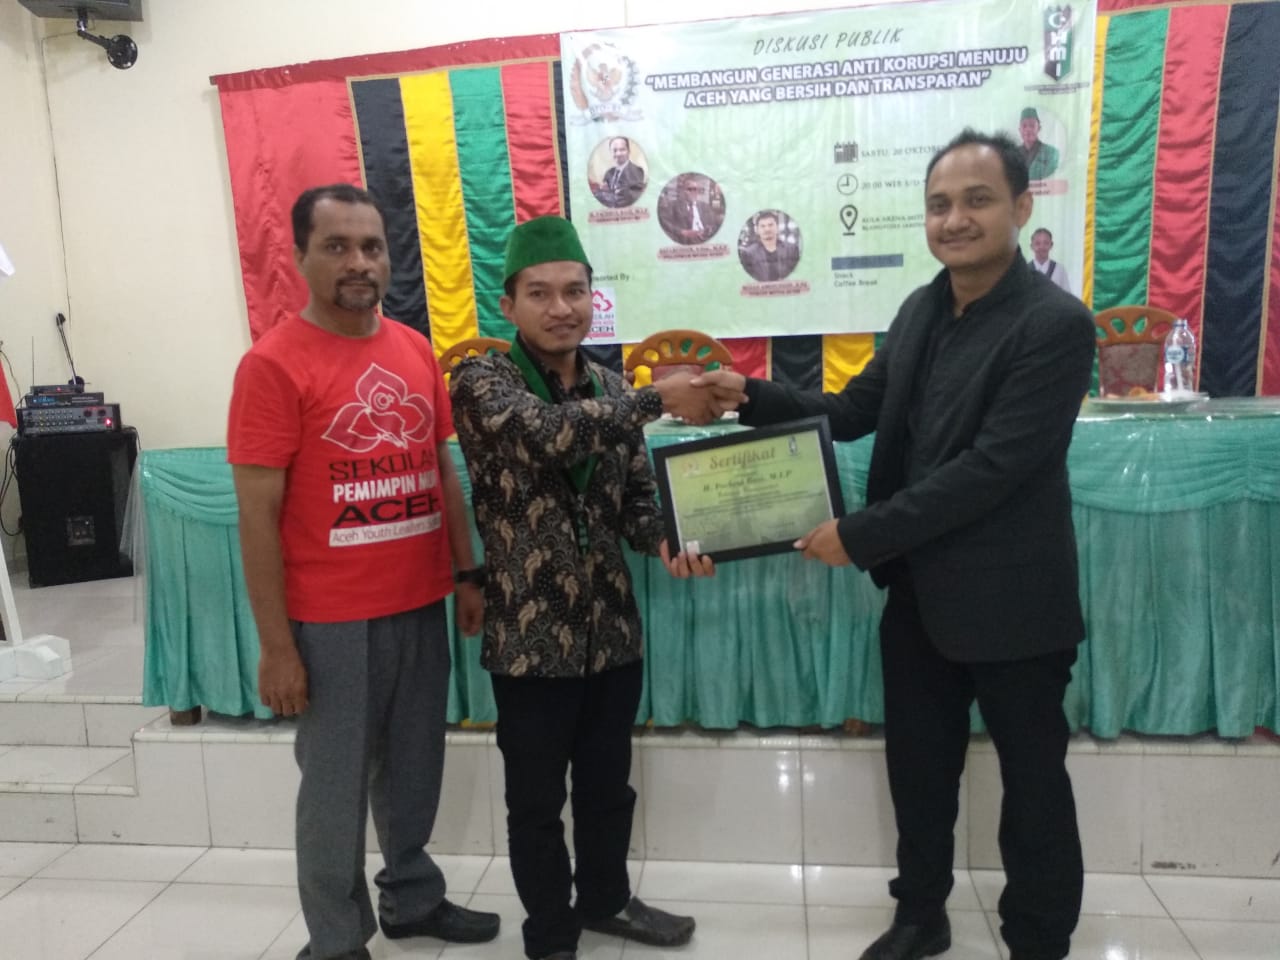 Ketua SPMA, Roys Fahlevi : SPMA Terus Berkampanye Untuk Menghilangkan Praktek Korupsi di Aceh